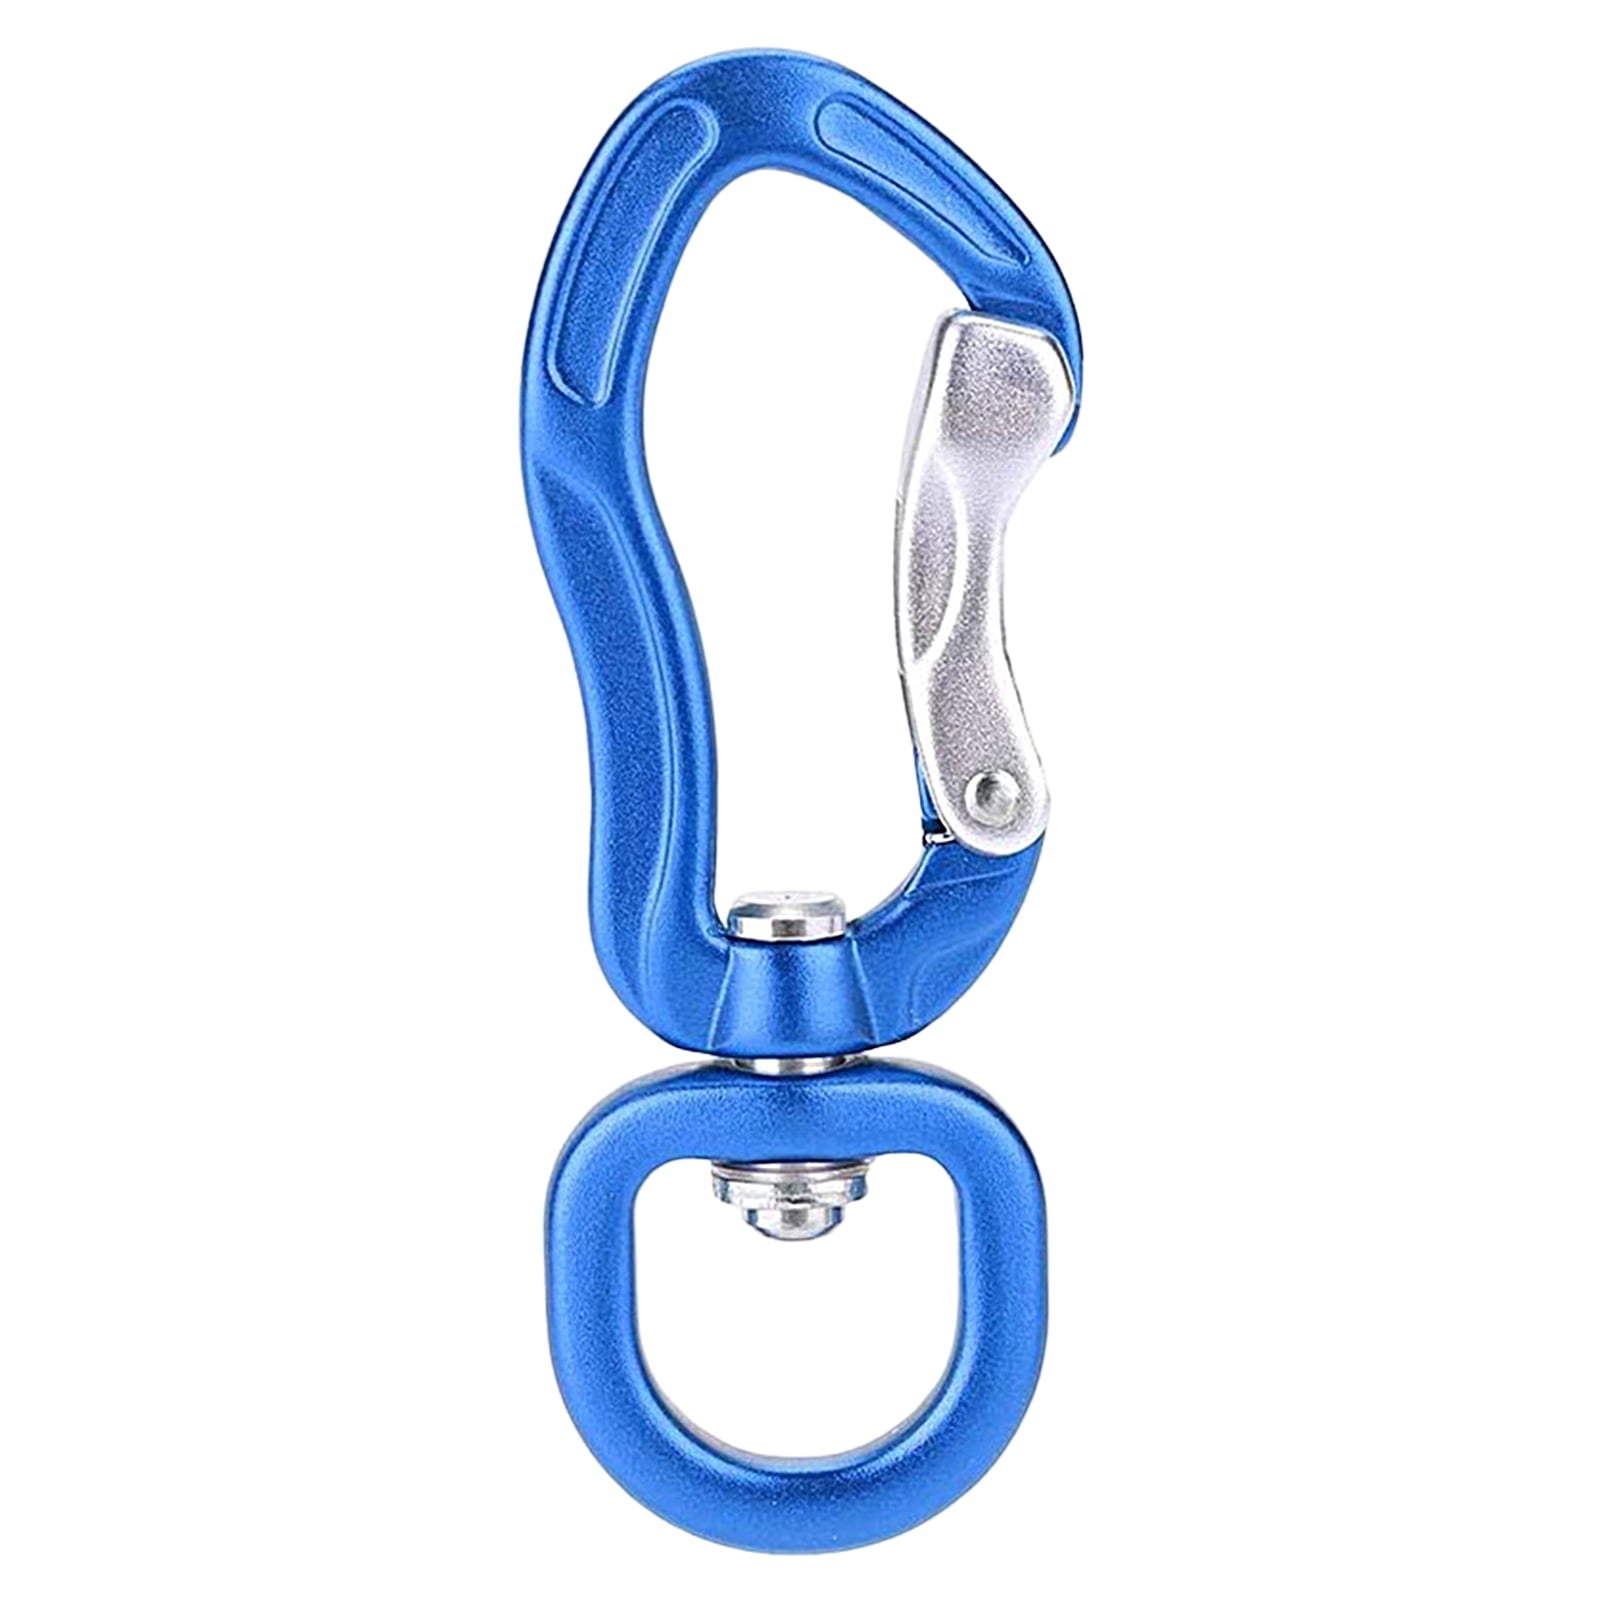 MI-YUKI Stainless Steel Spring Key Chain Carabiner Climbing Belt